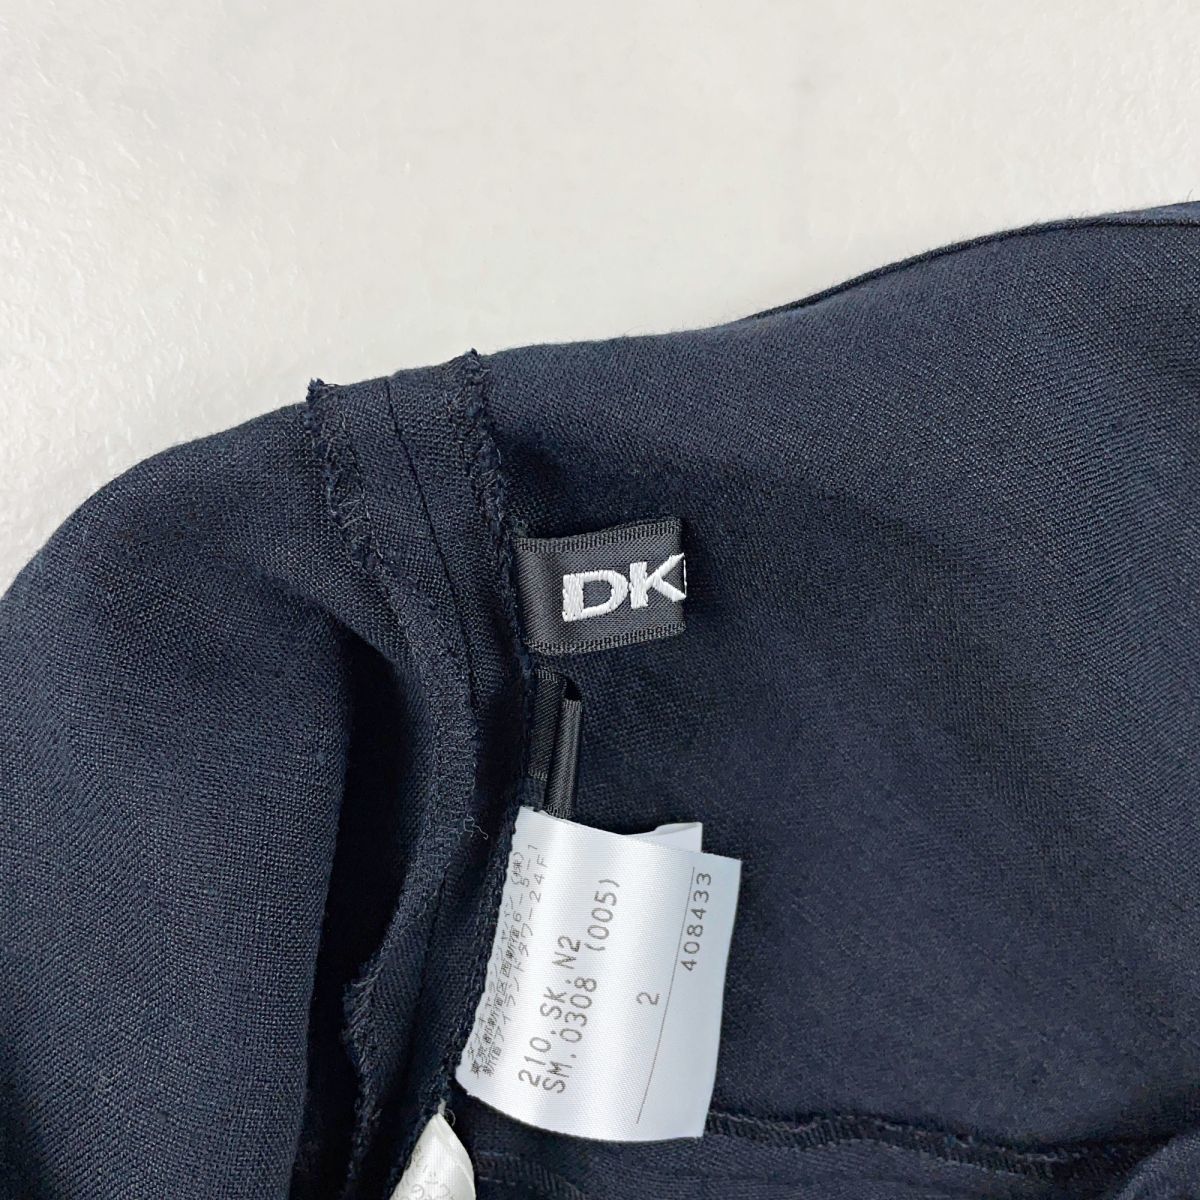  прекрасный товар DKNY DKNY linen100% flair юбка колени длина подкладка нет женский низ чёрный черный размер 2*KB363